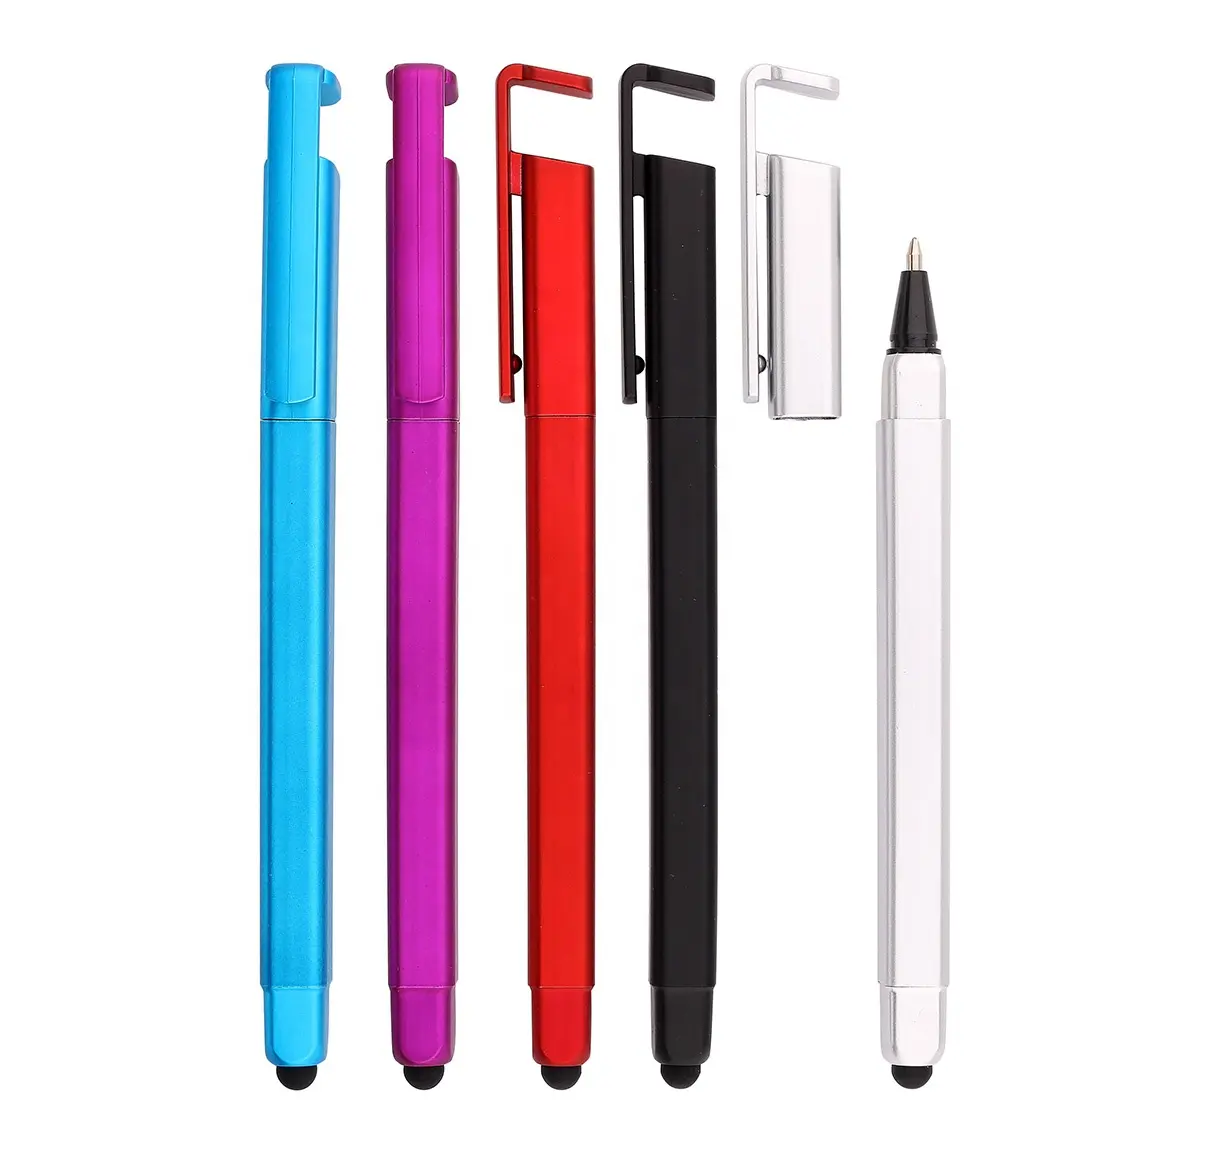 Toptan çok amaçlı 4 in 1 telefon aksesuarları ucuz dokunmatik ekran stylus kalem özelleştirilmiş stylus telefon tutucu cep tutucu kalem